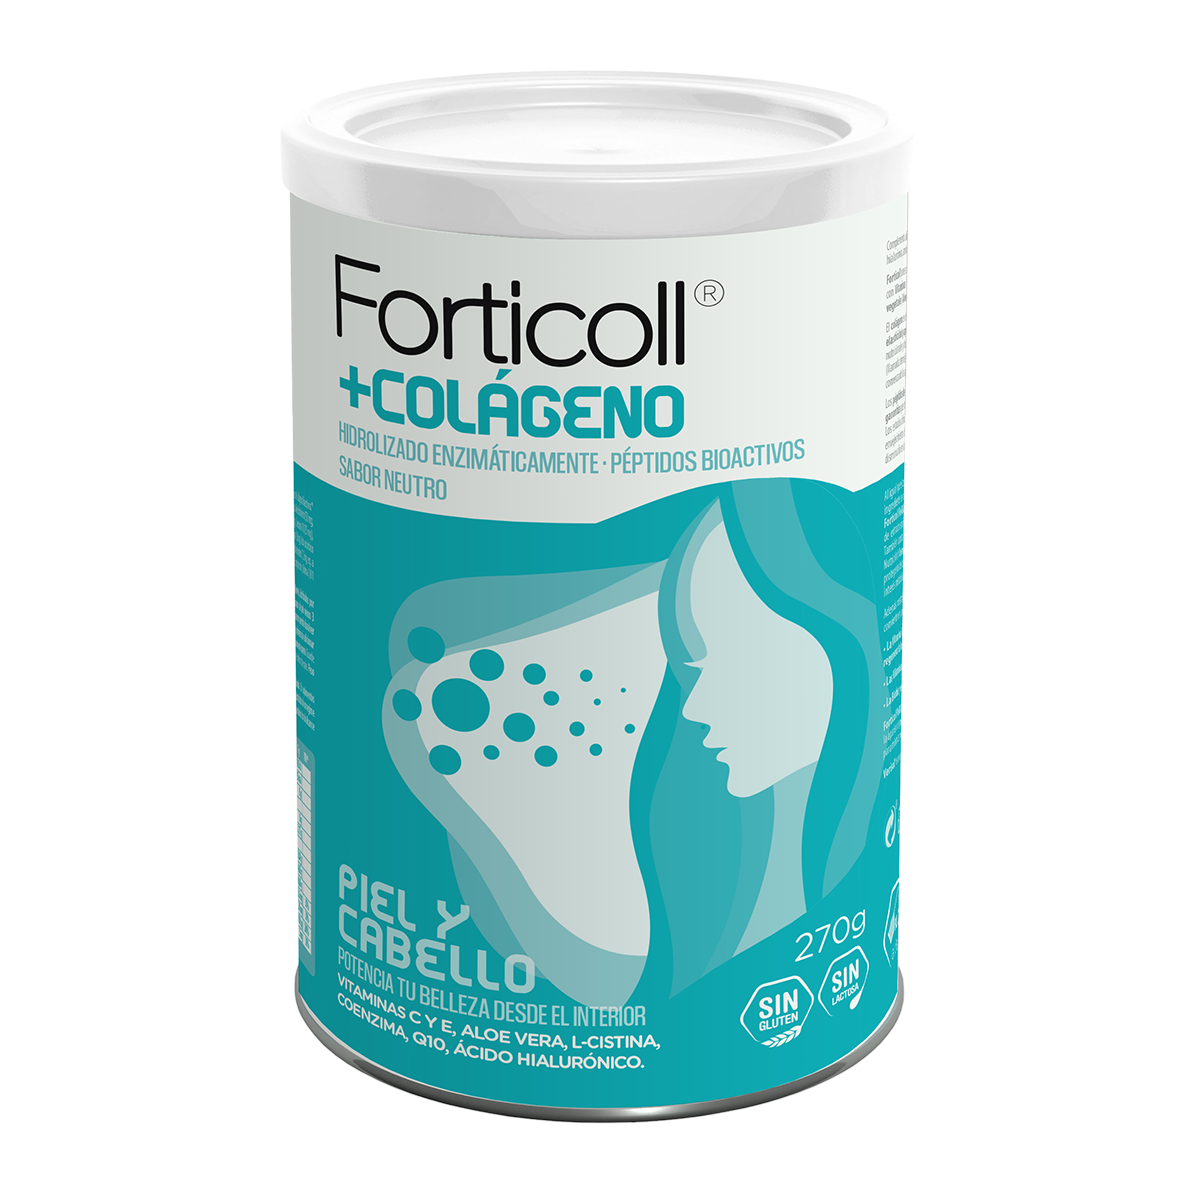 Colágeno bioactivo piel y cabello Forticoll 270g.